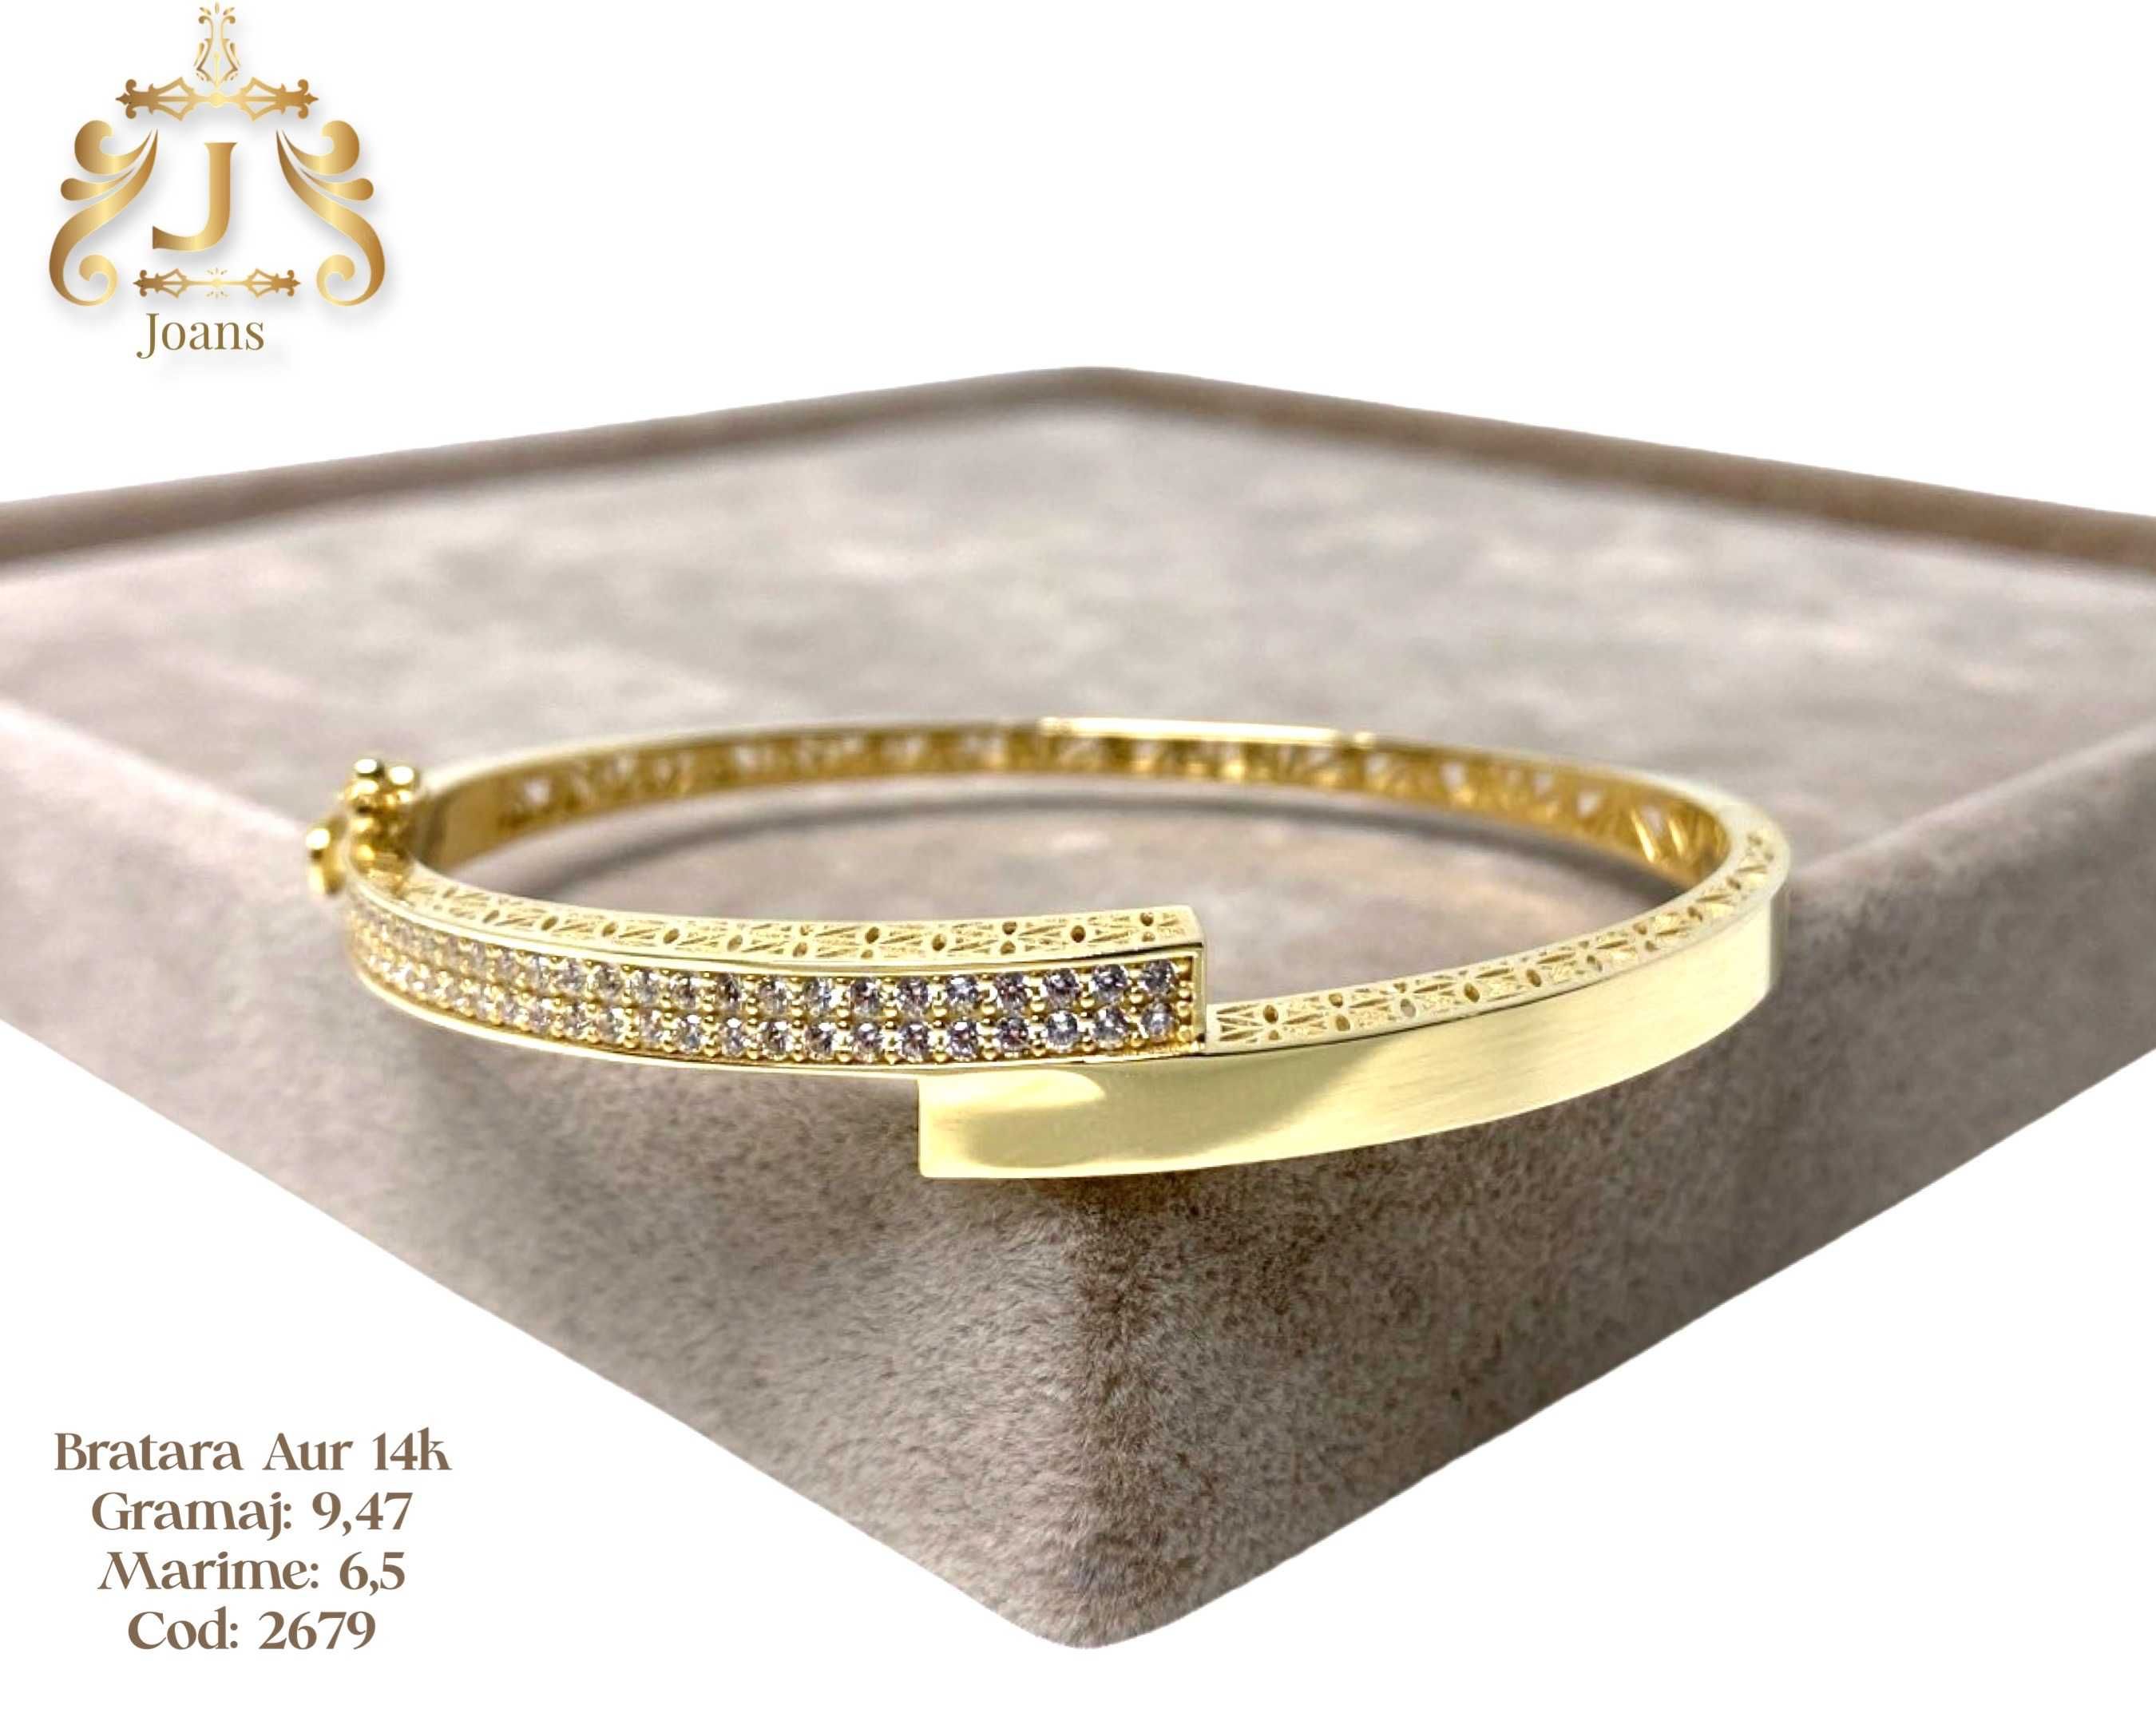 (2679) Bratara Aur 14k, 9,47 grame FB Bijoux Euro Gold